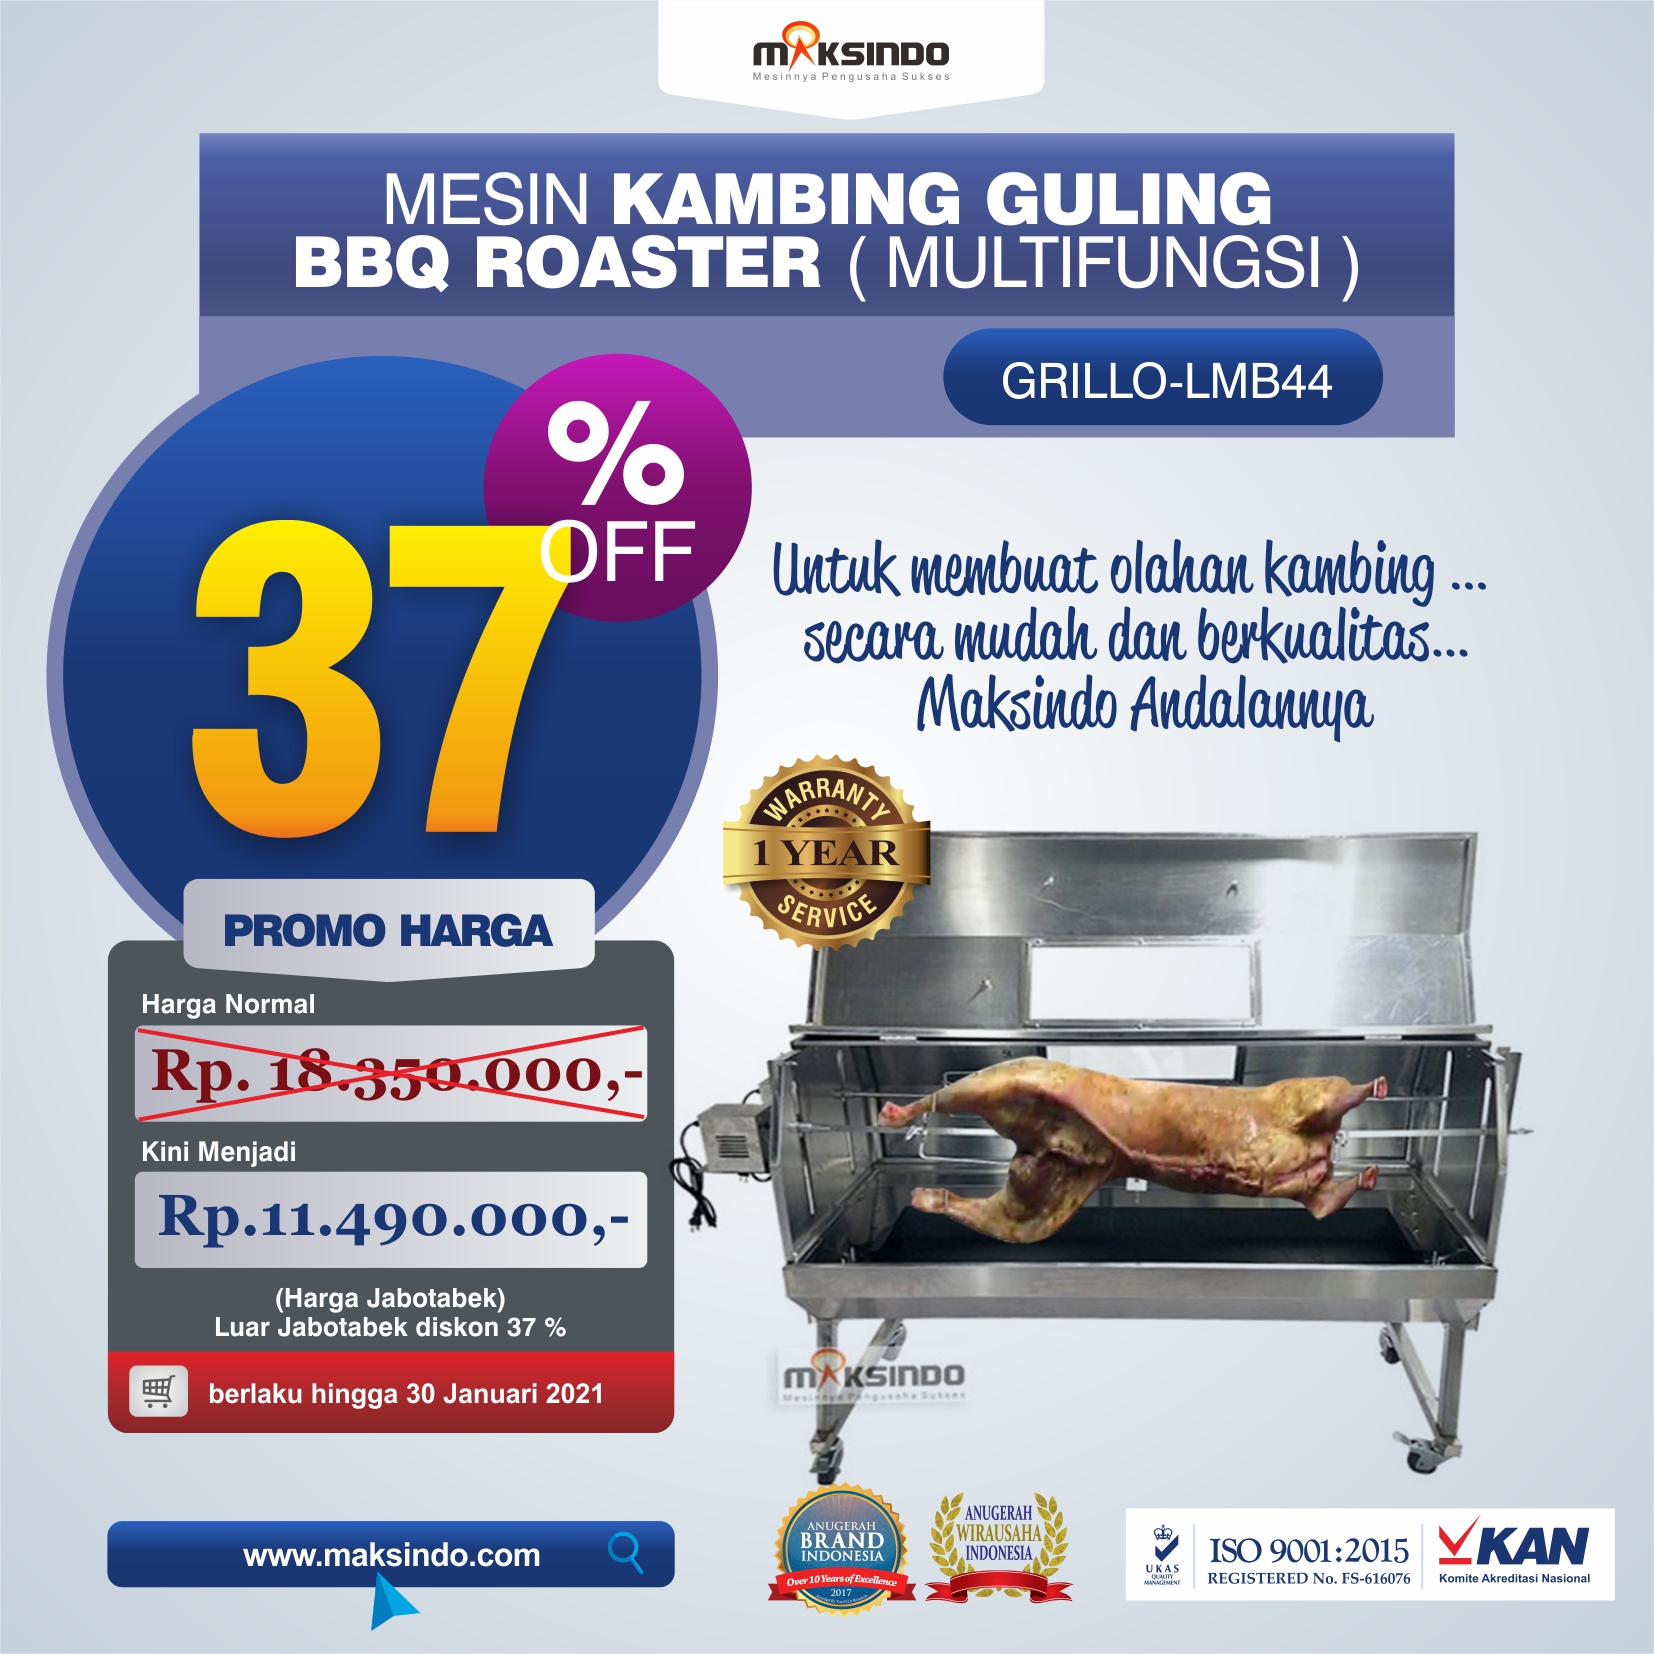 Jual Mesin Kambing Guling BBQ Roaster (GRILLO-LMB44) di Malang